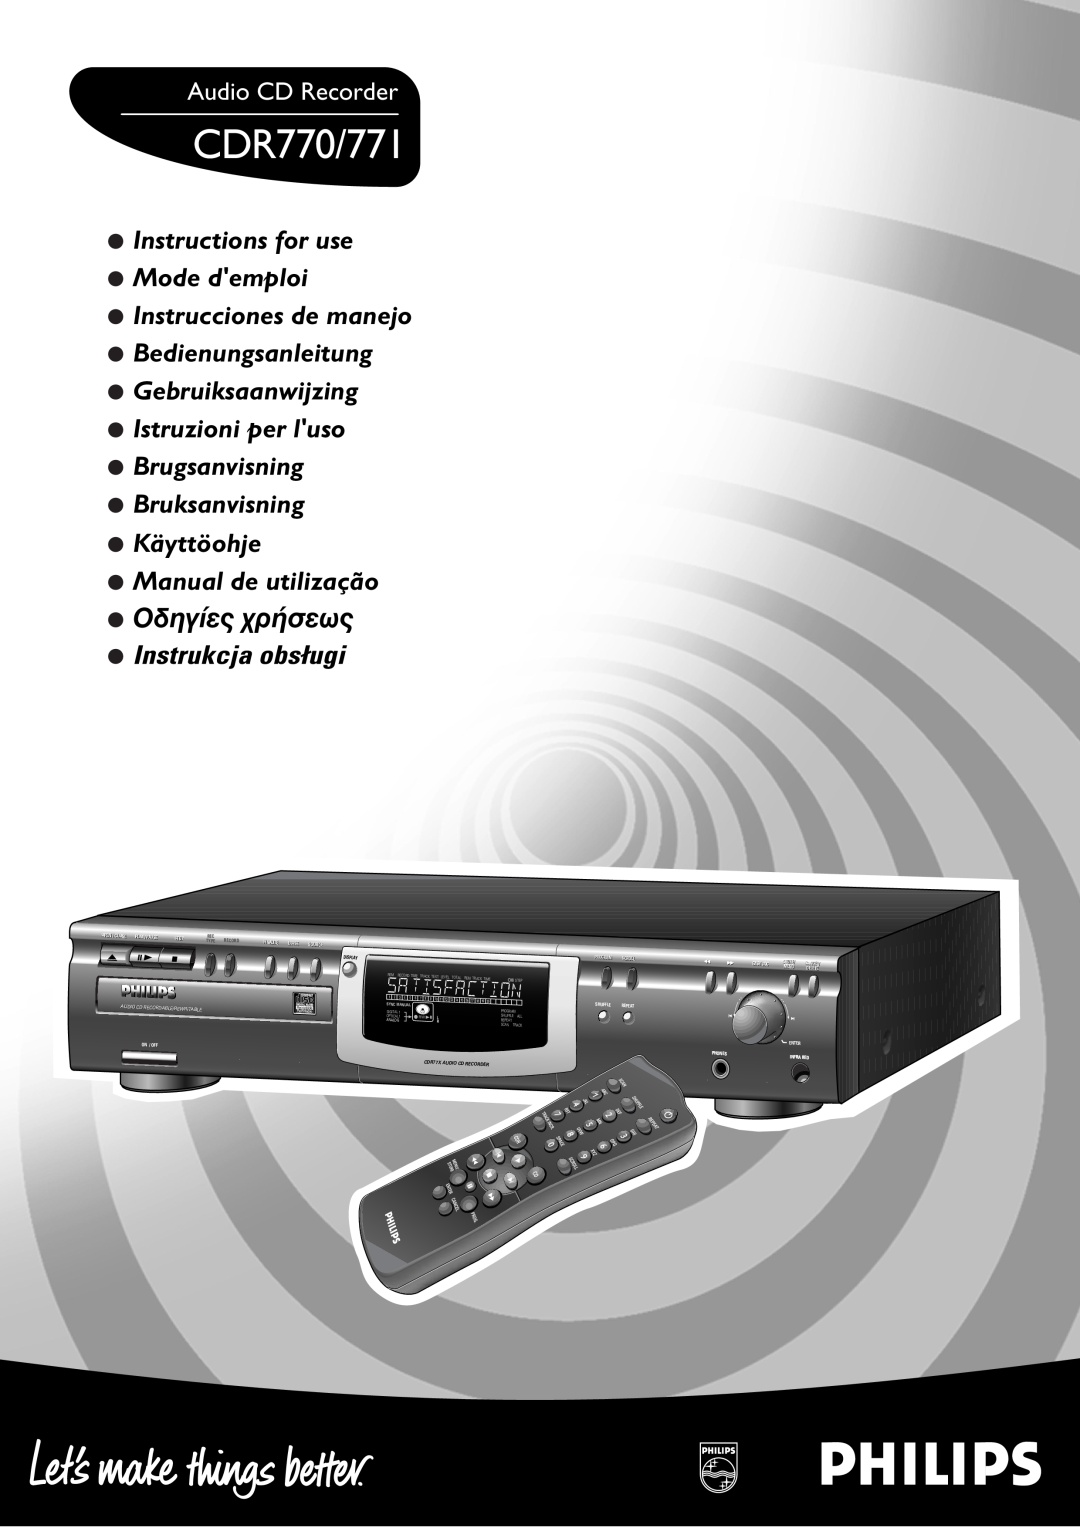 Philips CDR770/771 manual Audio CD Recorder, Manual de utilização, OäèçÝå÷ øòÜóåö÷, Stop, Erase, Source, On / Off, Scroll 